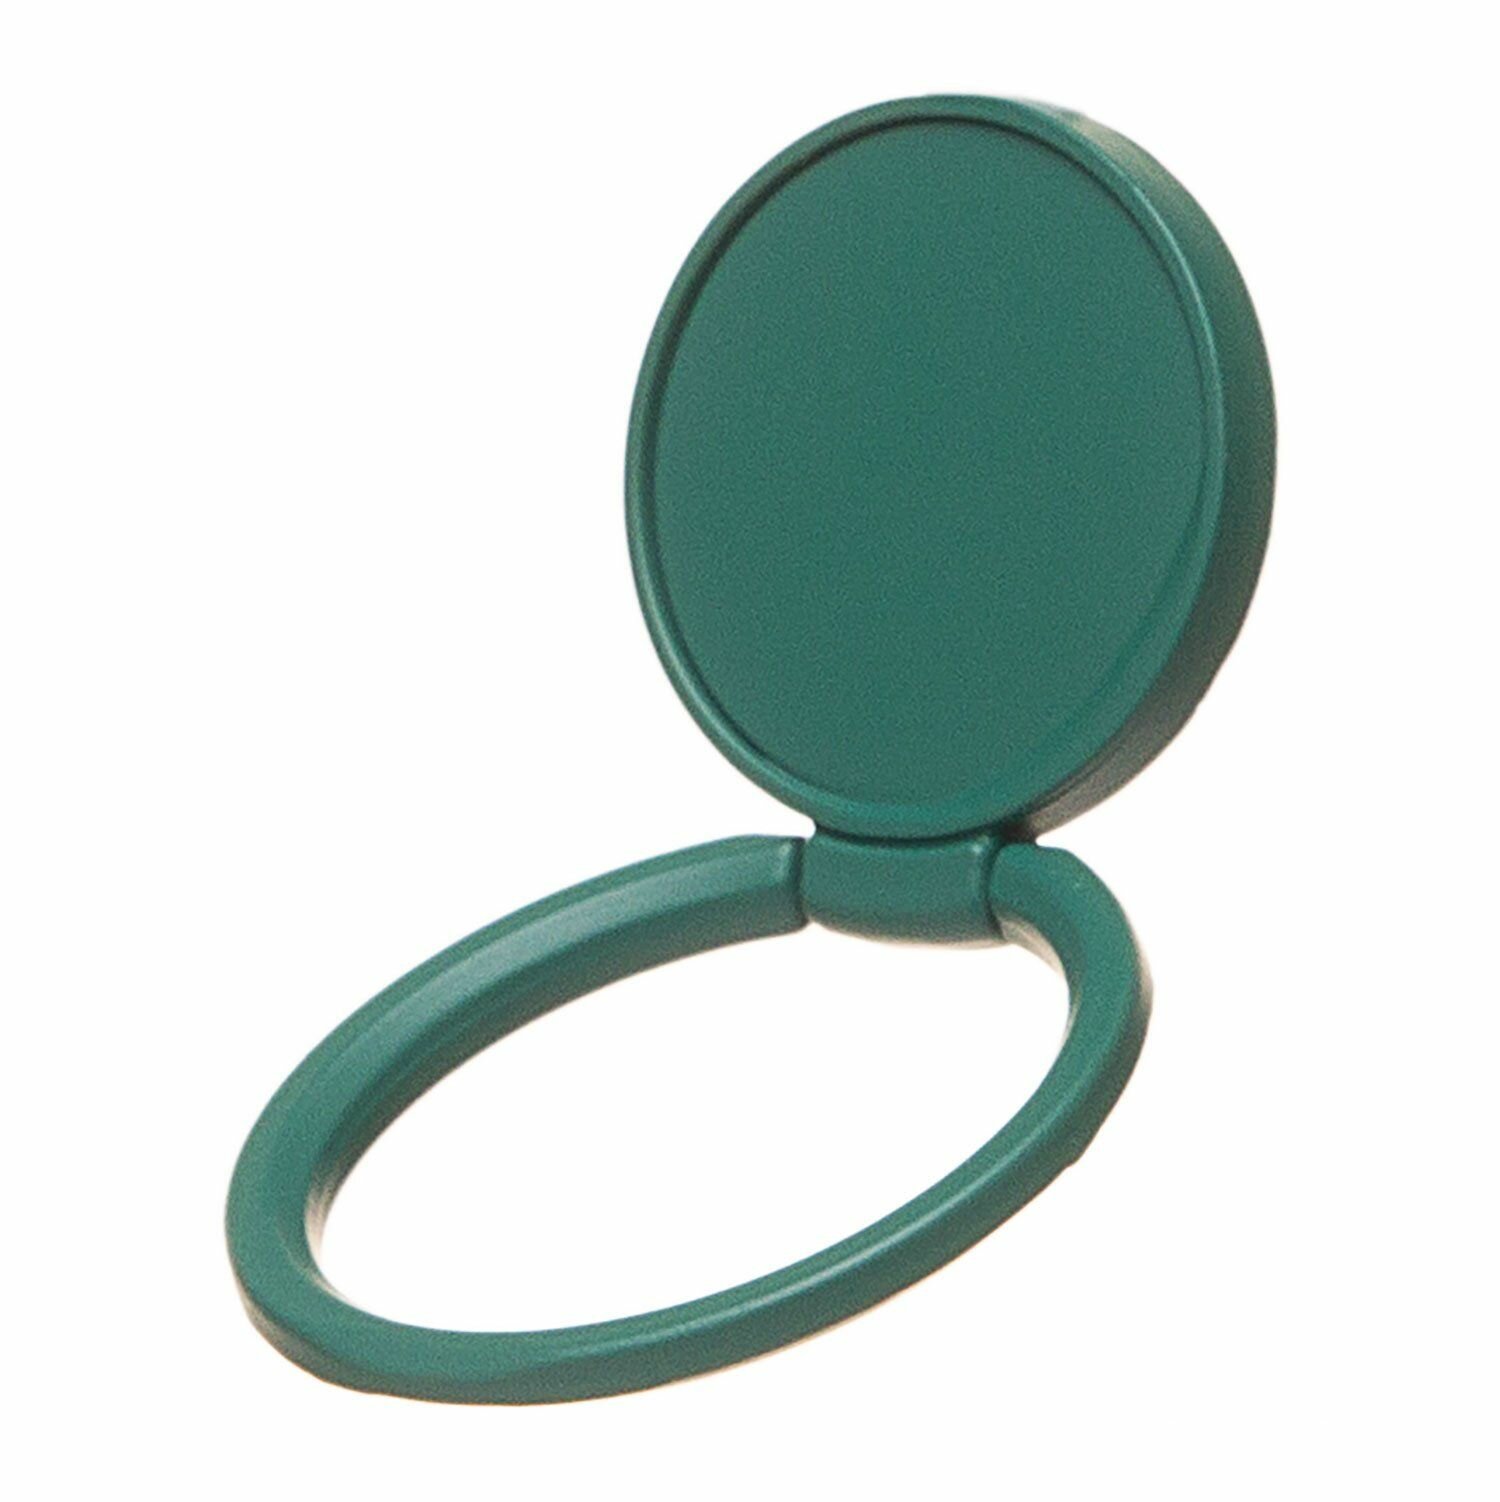 Держатель для телефона Popsockets PS61, кольцо на палец, темно-зеленый, 1 шт